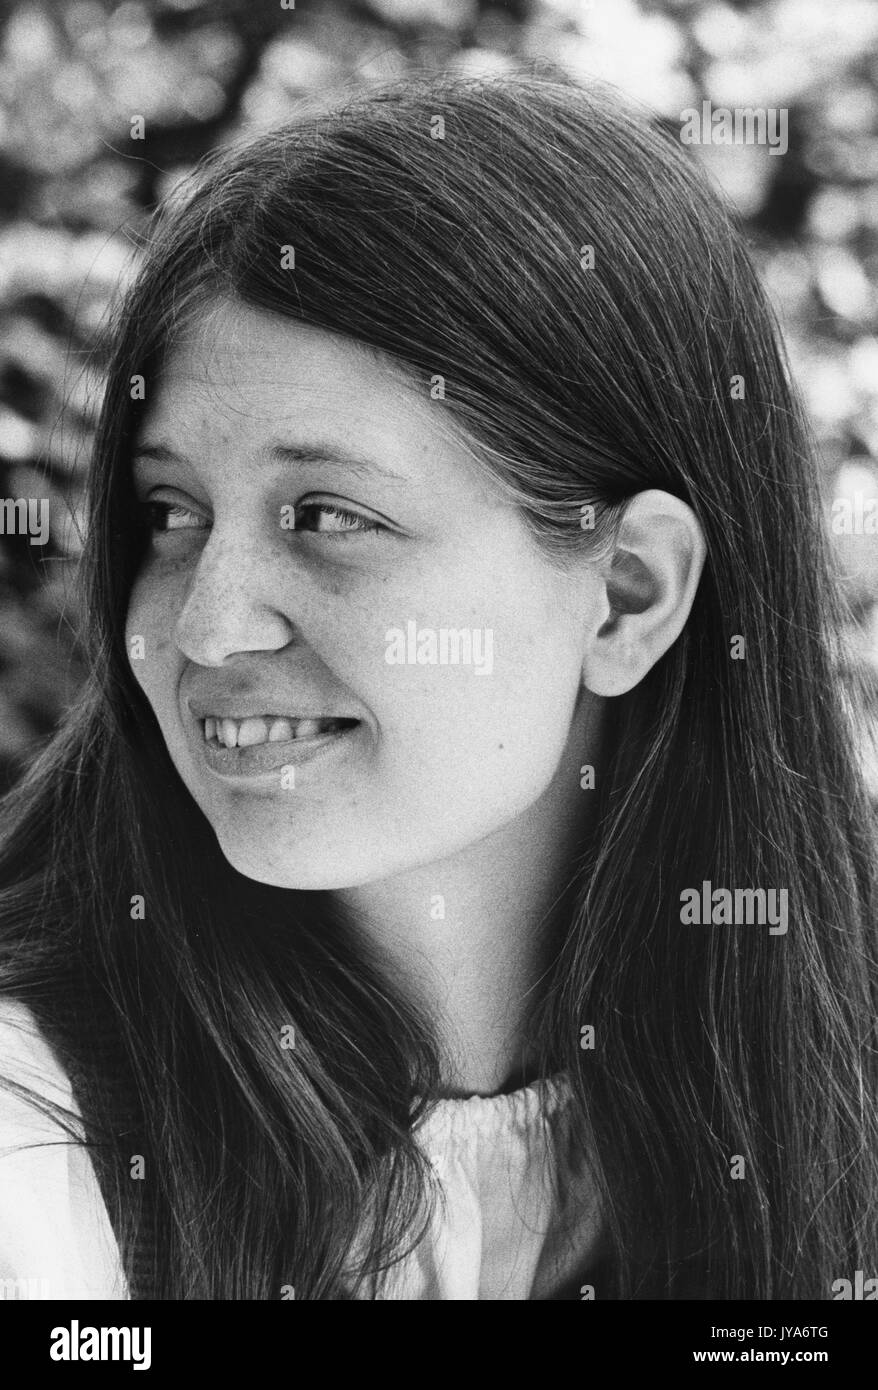 Una fotografia ritratto di una studentessa laureata alla Johns Hopkins University che si trova fuori dal campus durante i primi anni di ammissione delle donne nel programma di laurea, a Baltimora, Maryland. 1970. Foto Stock